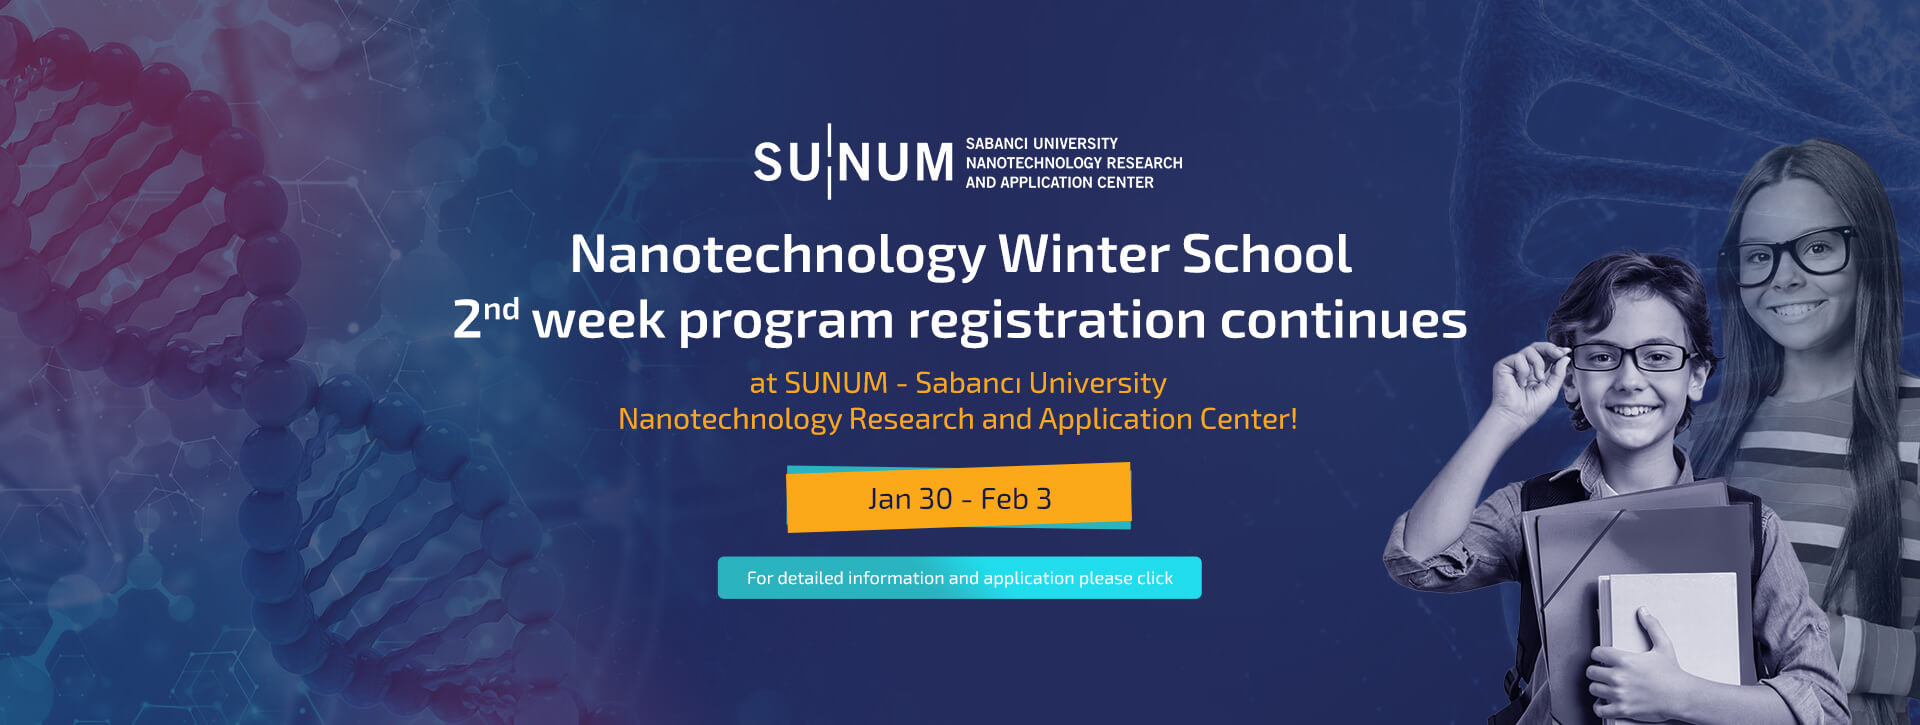 Nanotechnology Winter School 2nd week program registration continues  at SUNUM - Sabancı University Nanotechnology Research and Application Center!